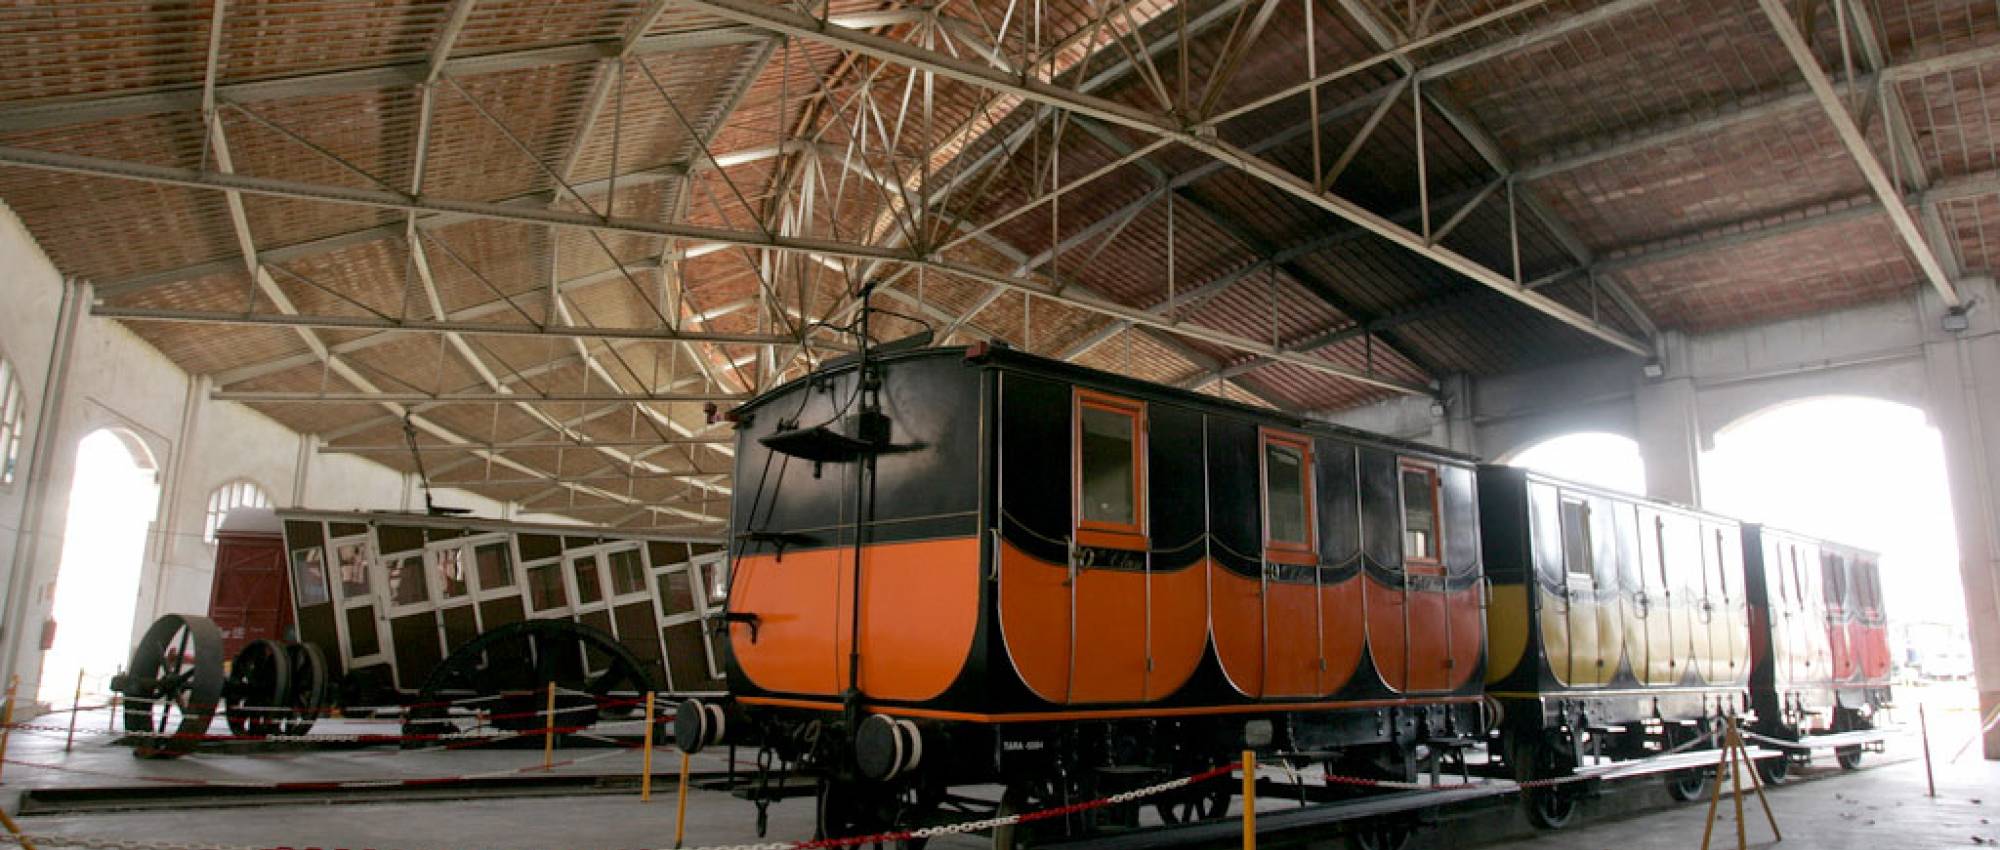 Museu del Ferrocarril de Vilanova i la Geltrú. Press Cambrabcn / Flickr. CC BY-SA 2.0